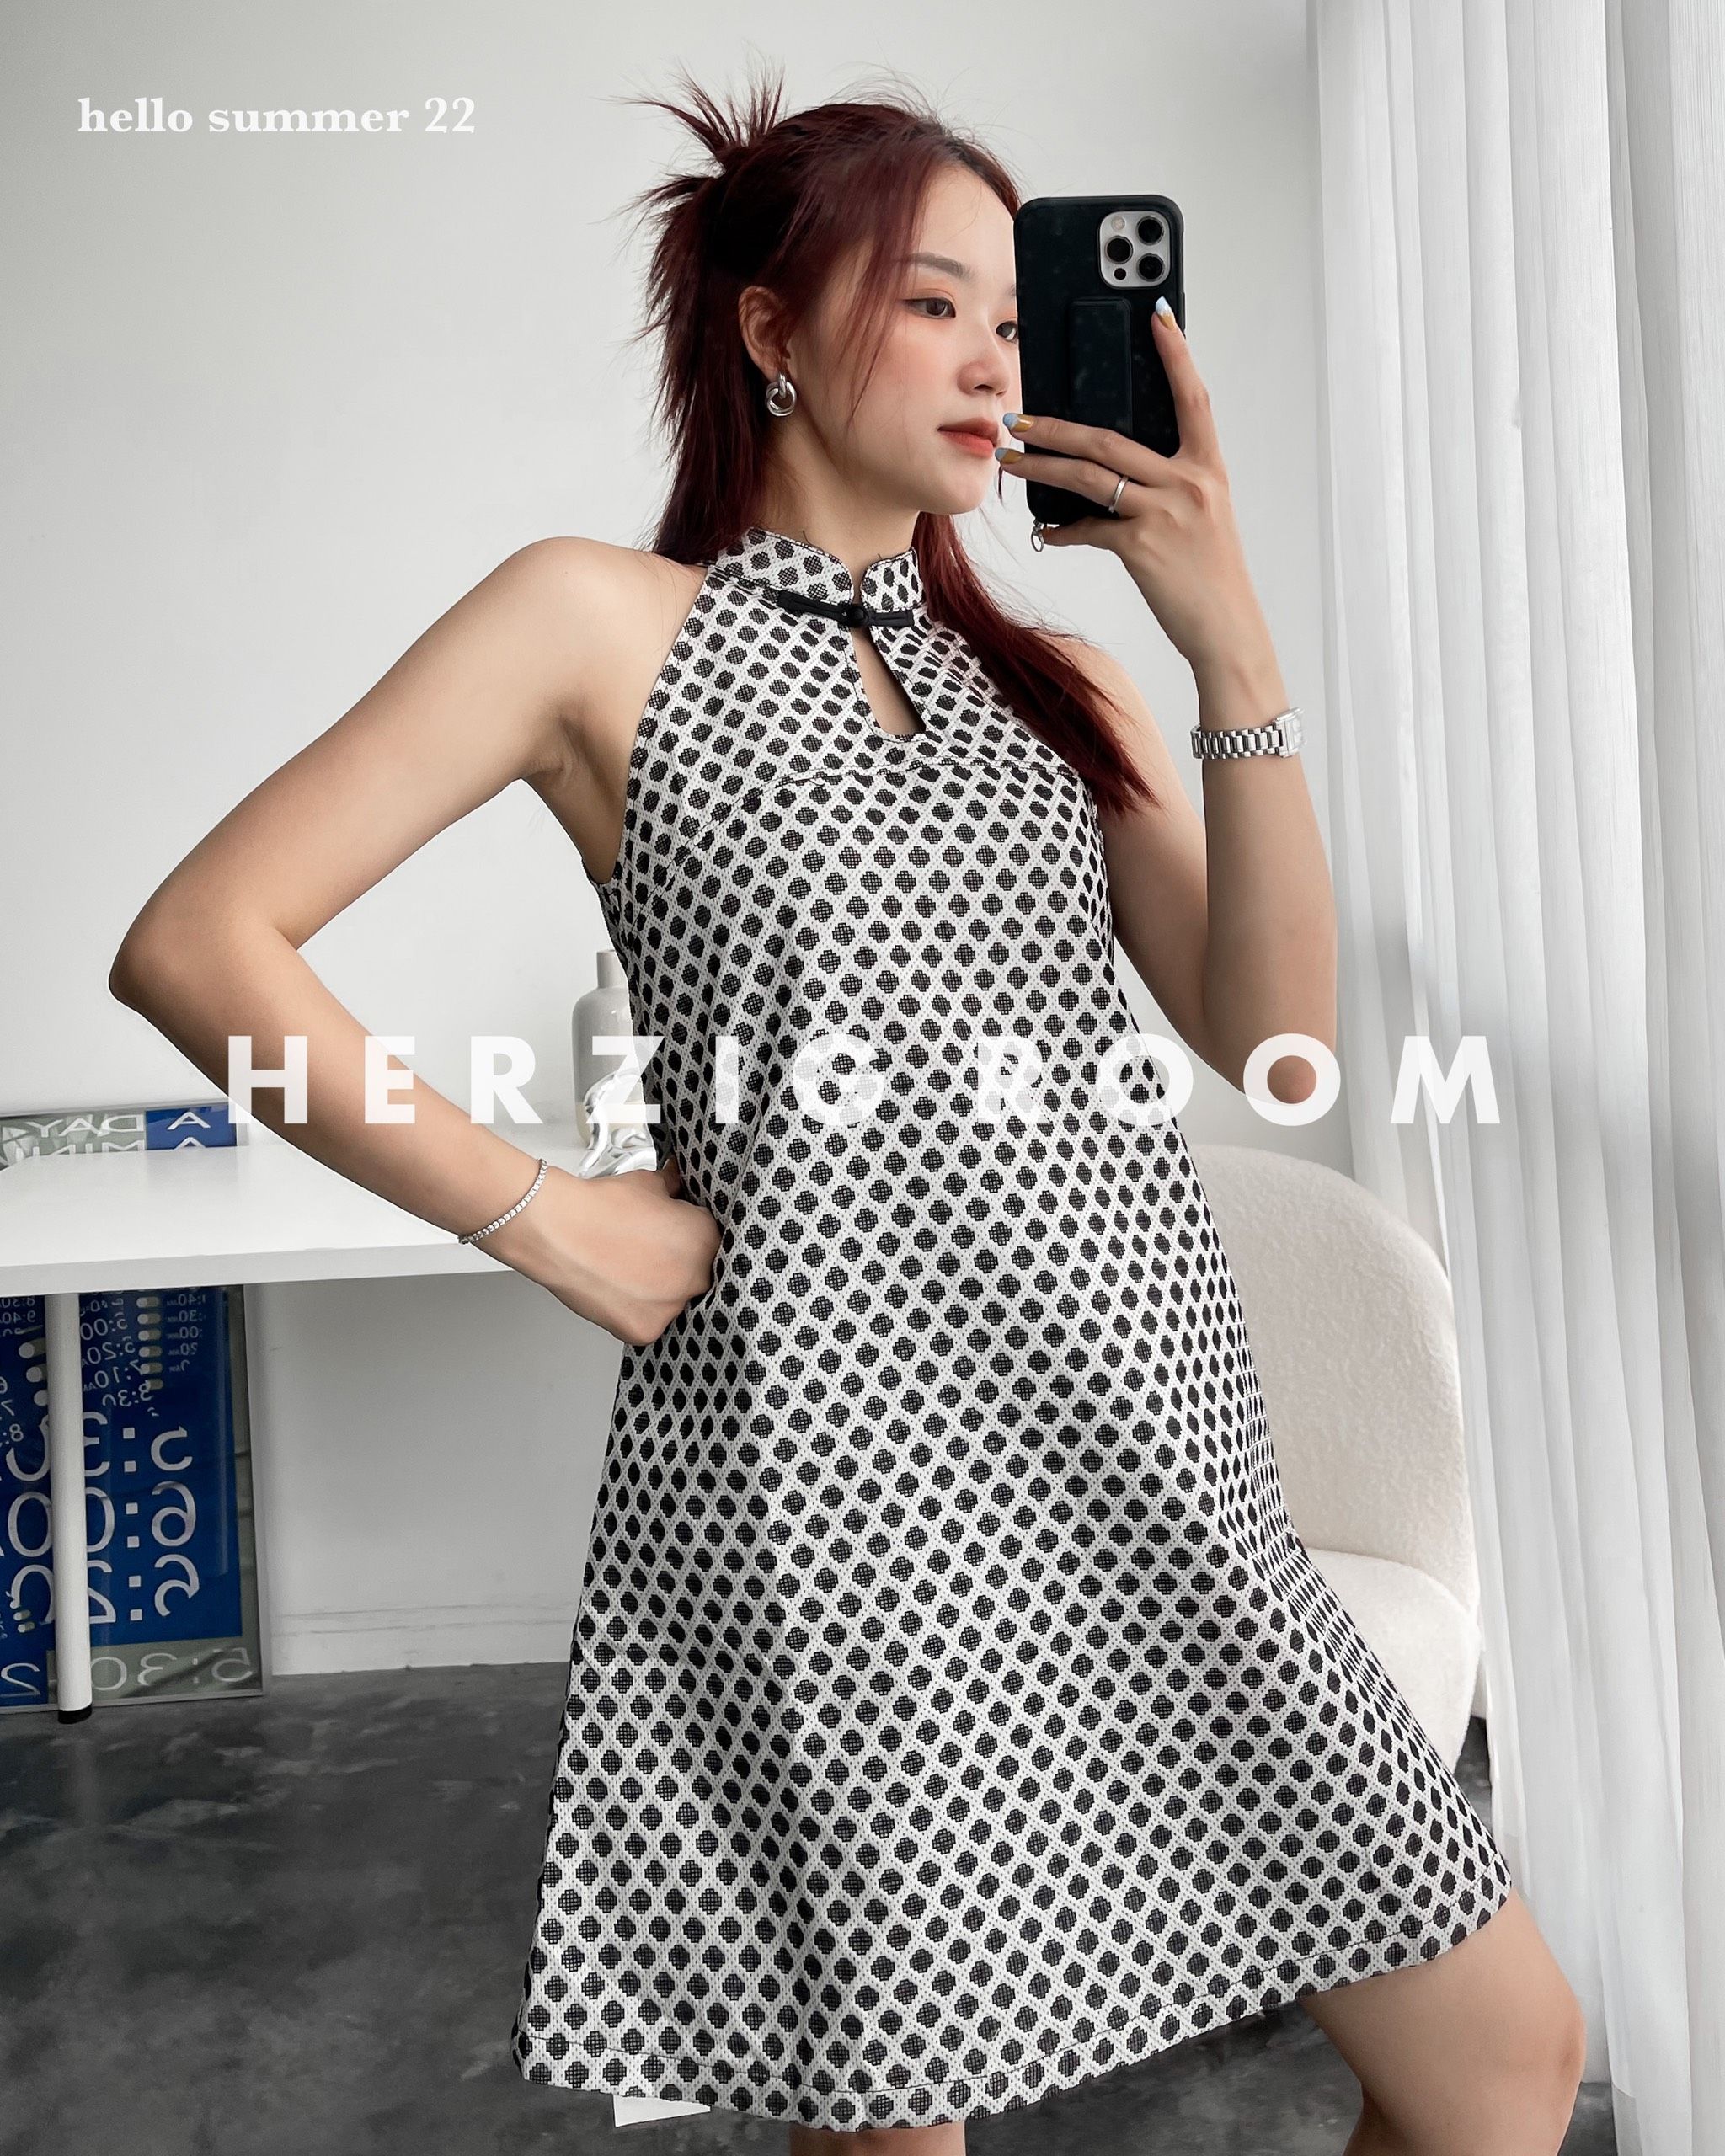 BELY | V561 - Váy đầm ôm A cổ vest thiết kế tạo khối 2 bên - Đen, Be - Bely  | Thời trang cao cấp Bely